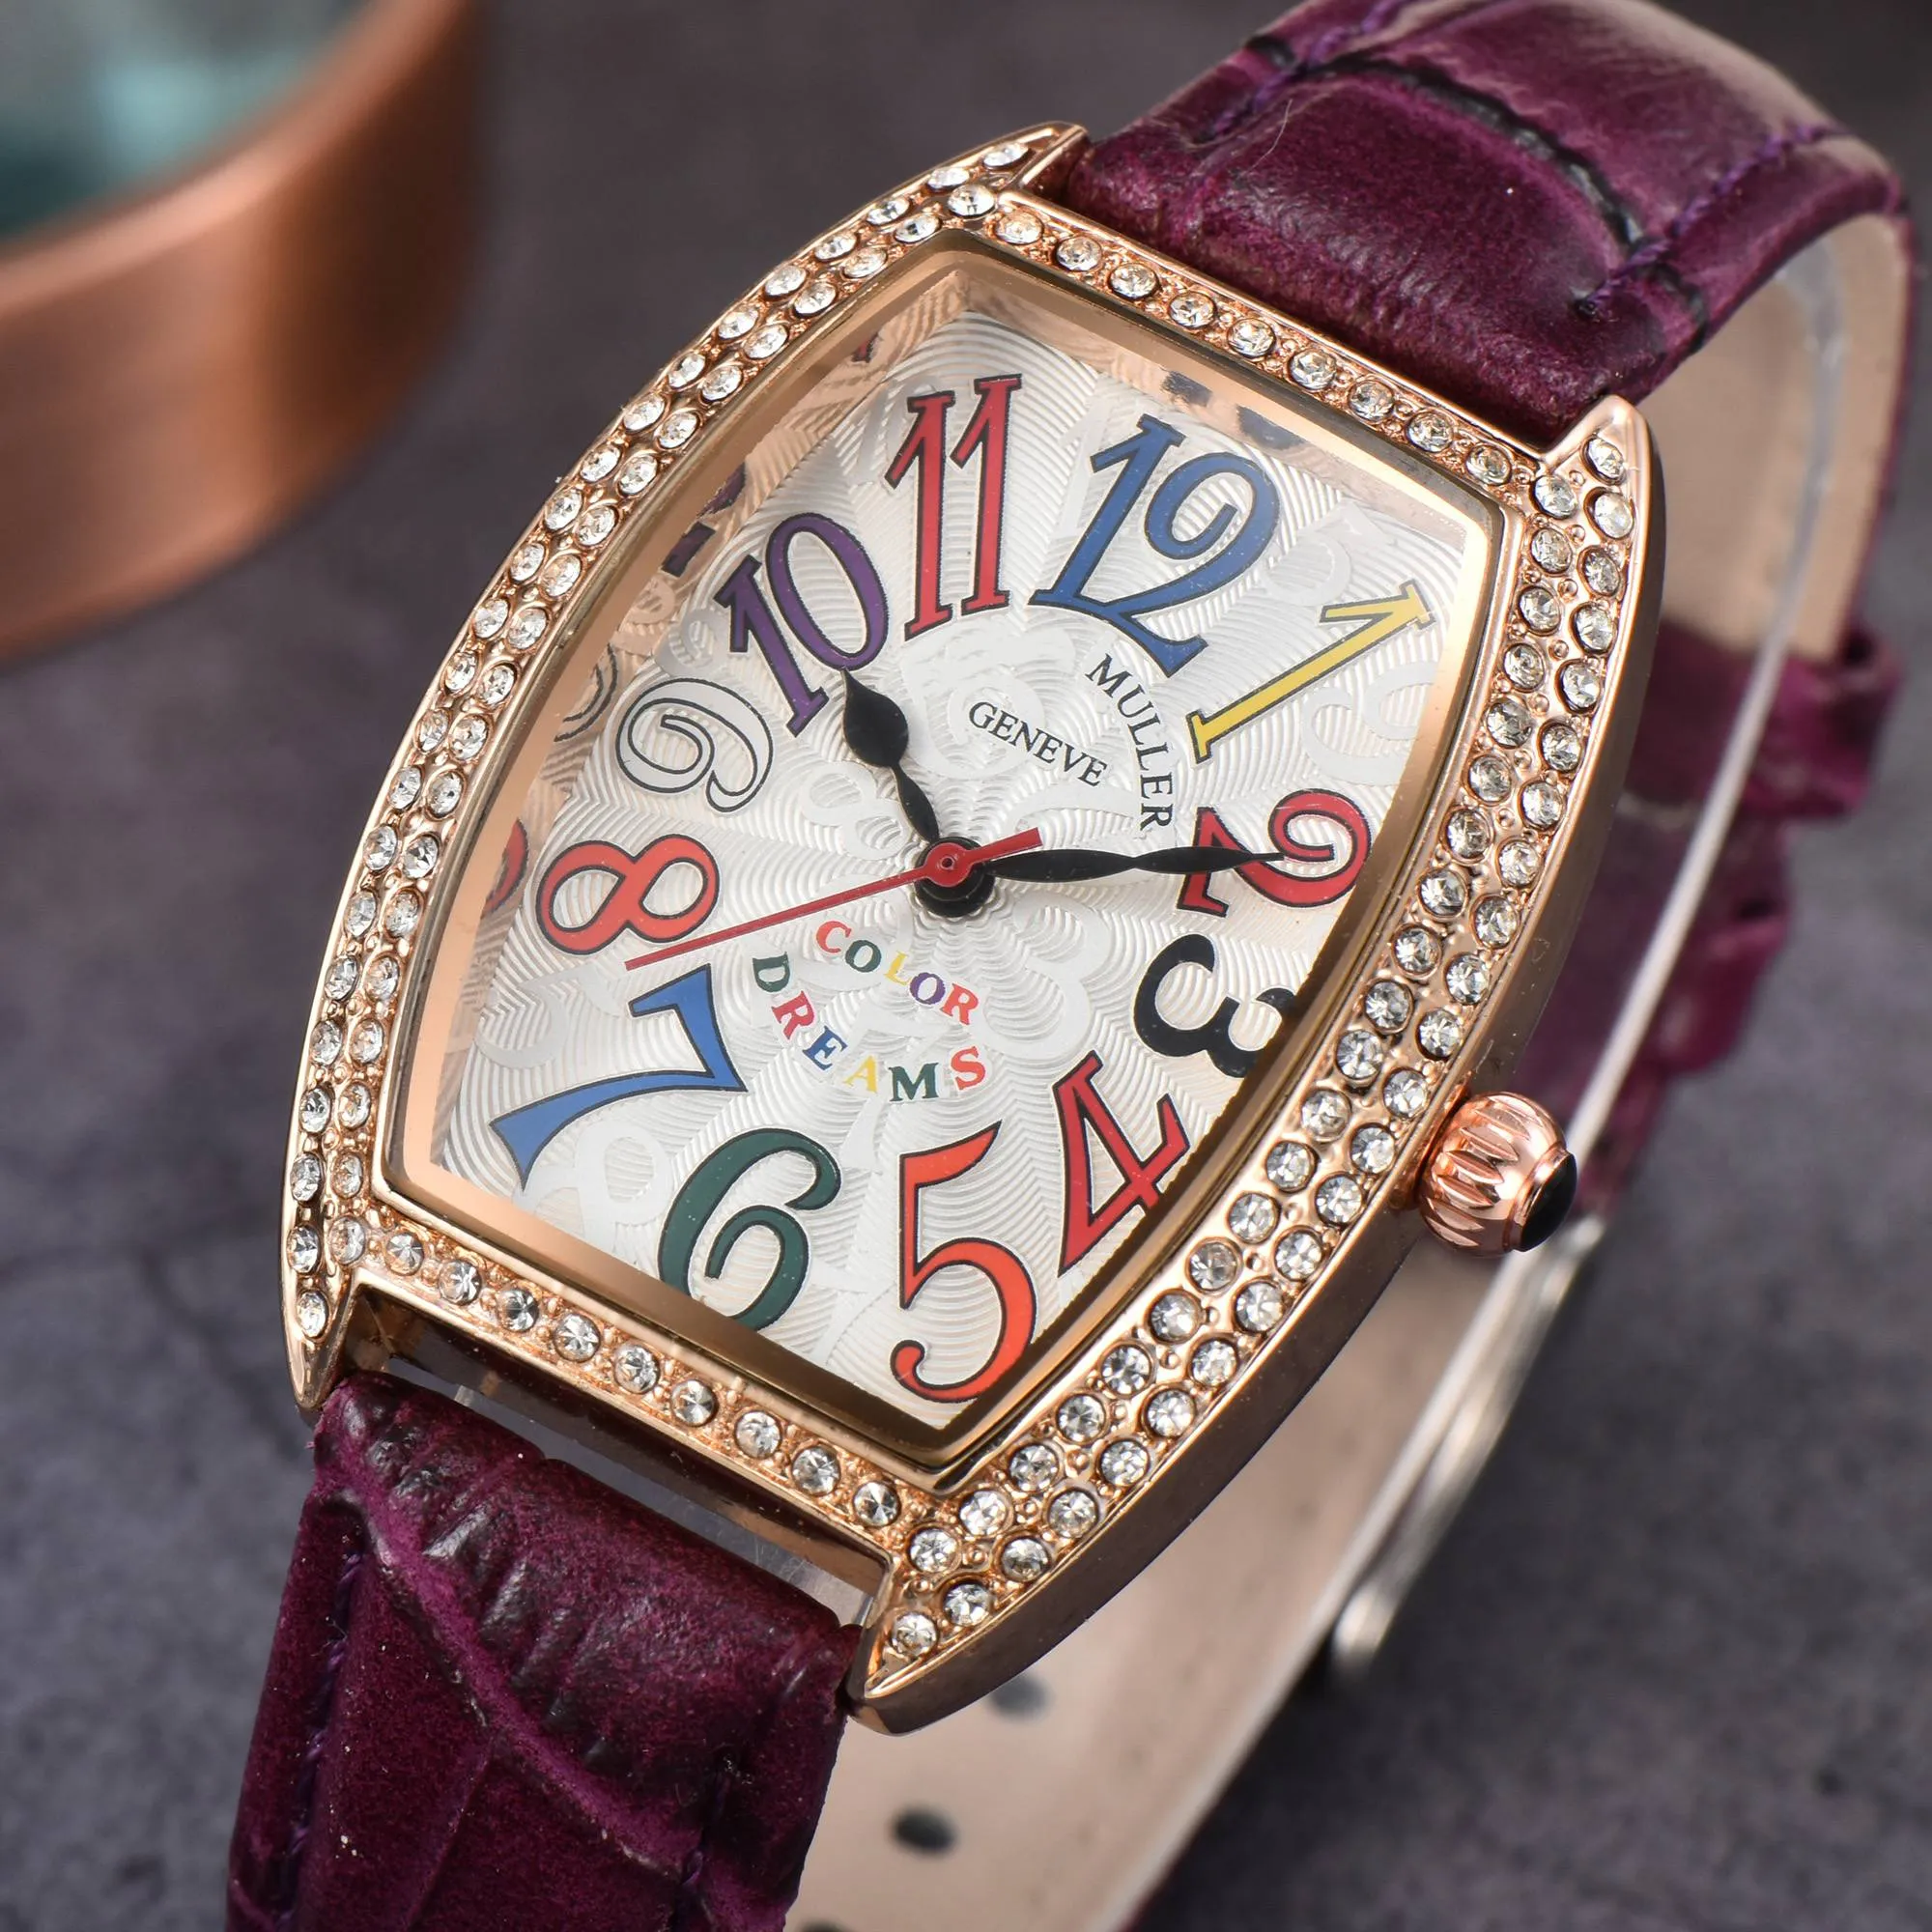 Gorący styl klasyczny Frenk Square Diamond Series Luksusowy projektant Watch Advanced Woman Watches Pełna funkcja Chronograph Straż Quarz Chronograph